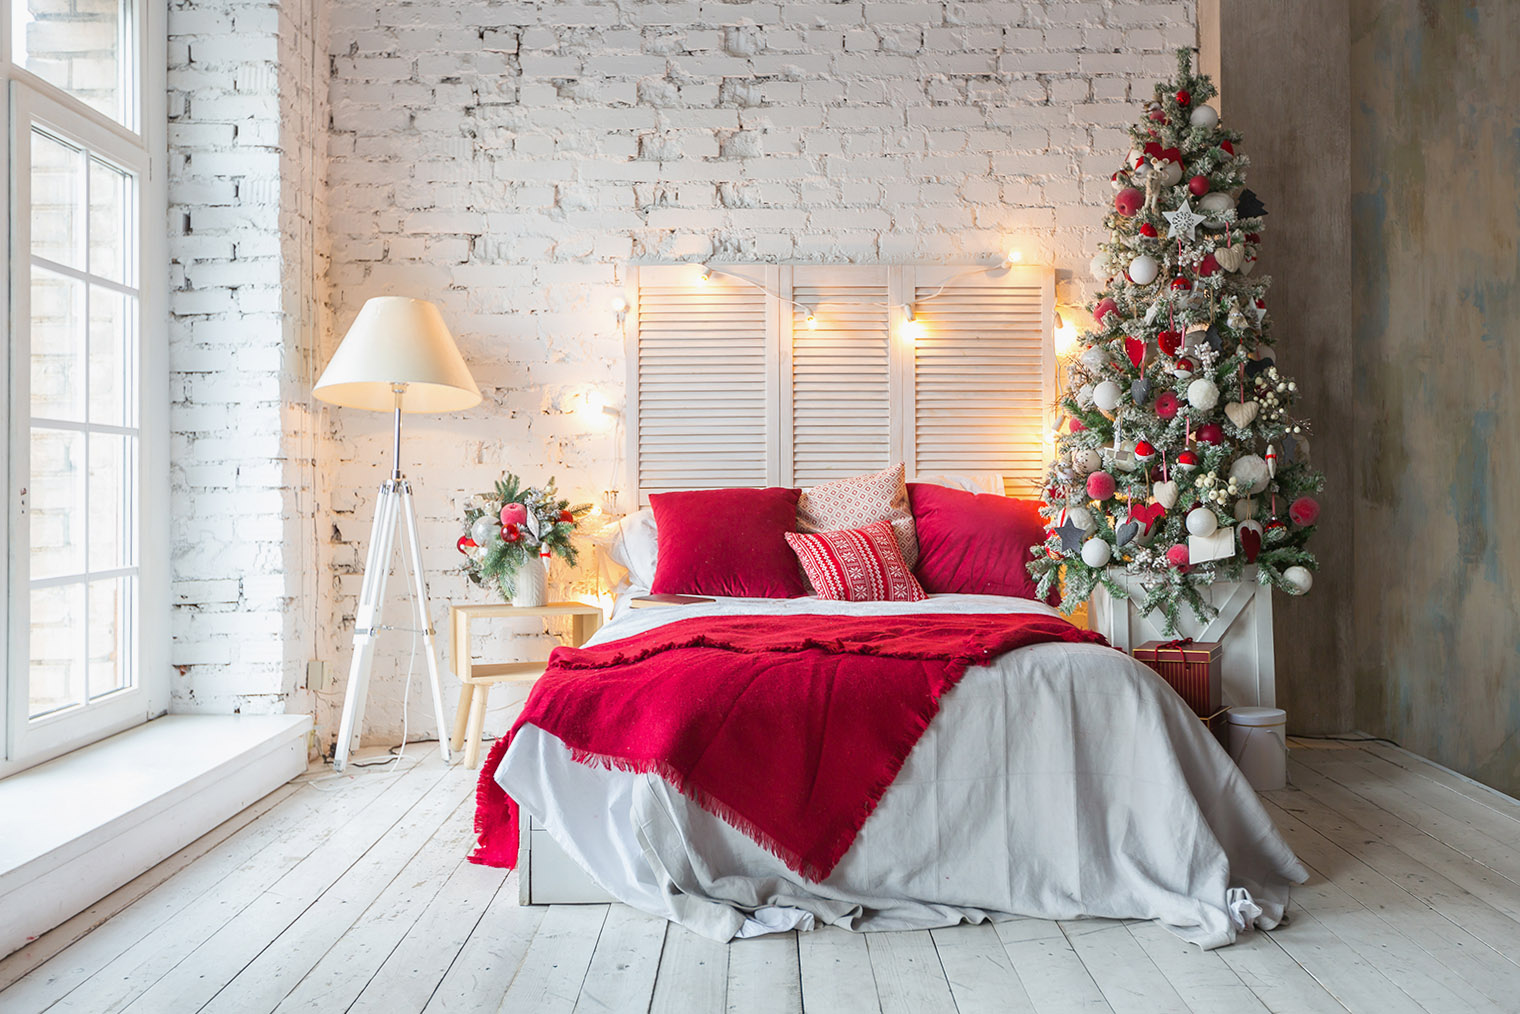 Гирлянда на изголовье создаст в спальне праздничную атмосферу. Фотография: Pinkystock / Shutterstock